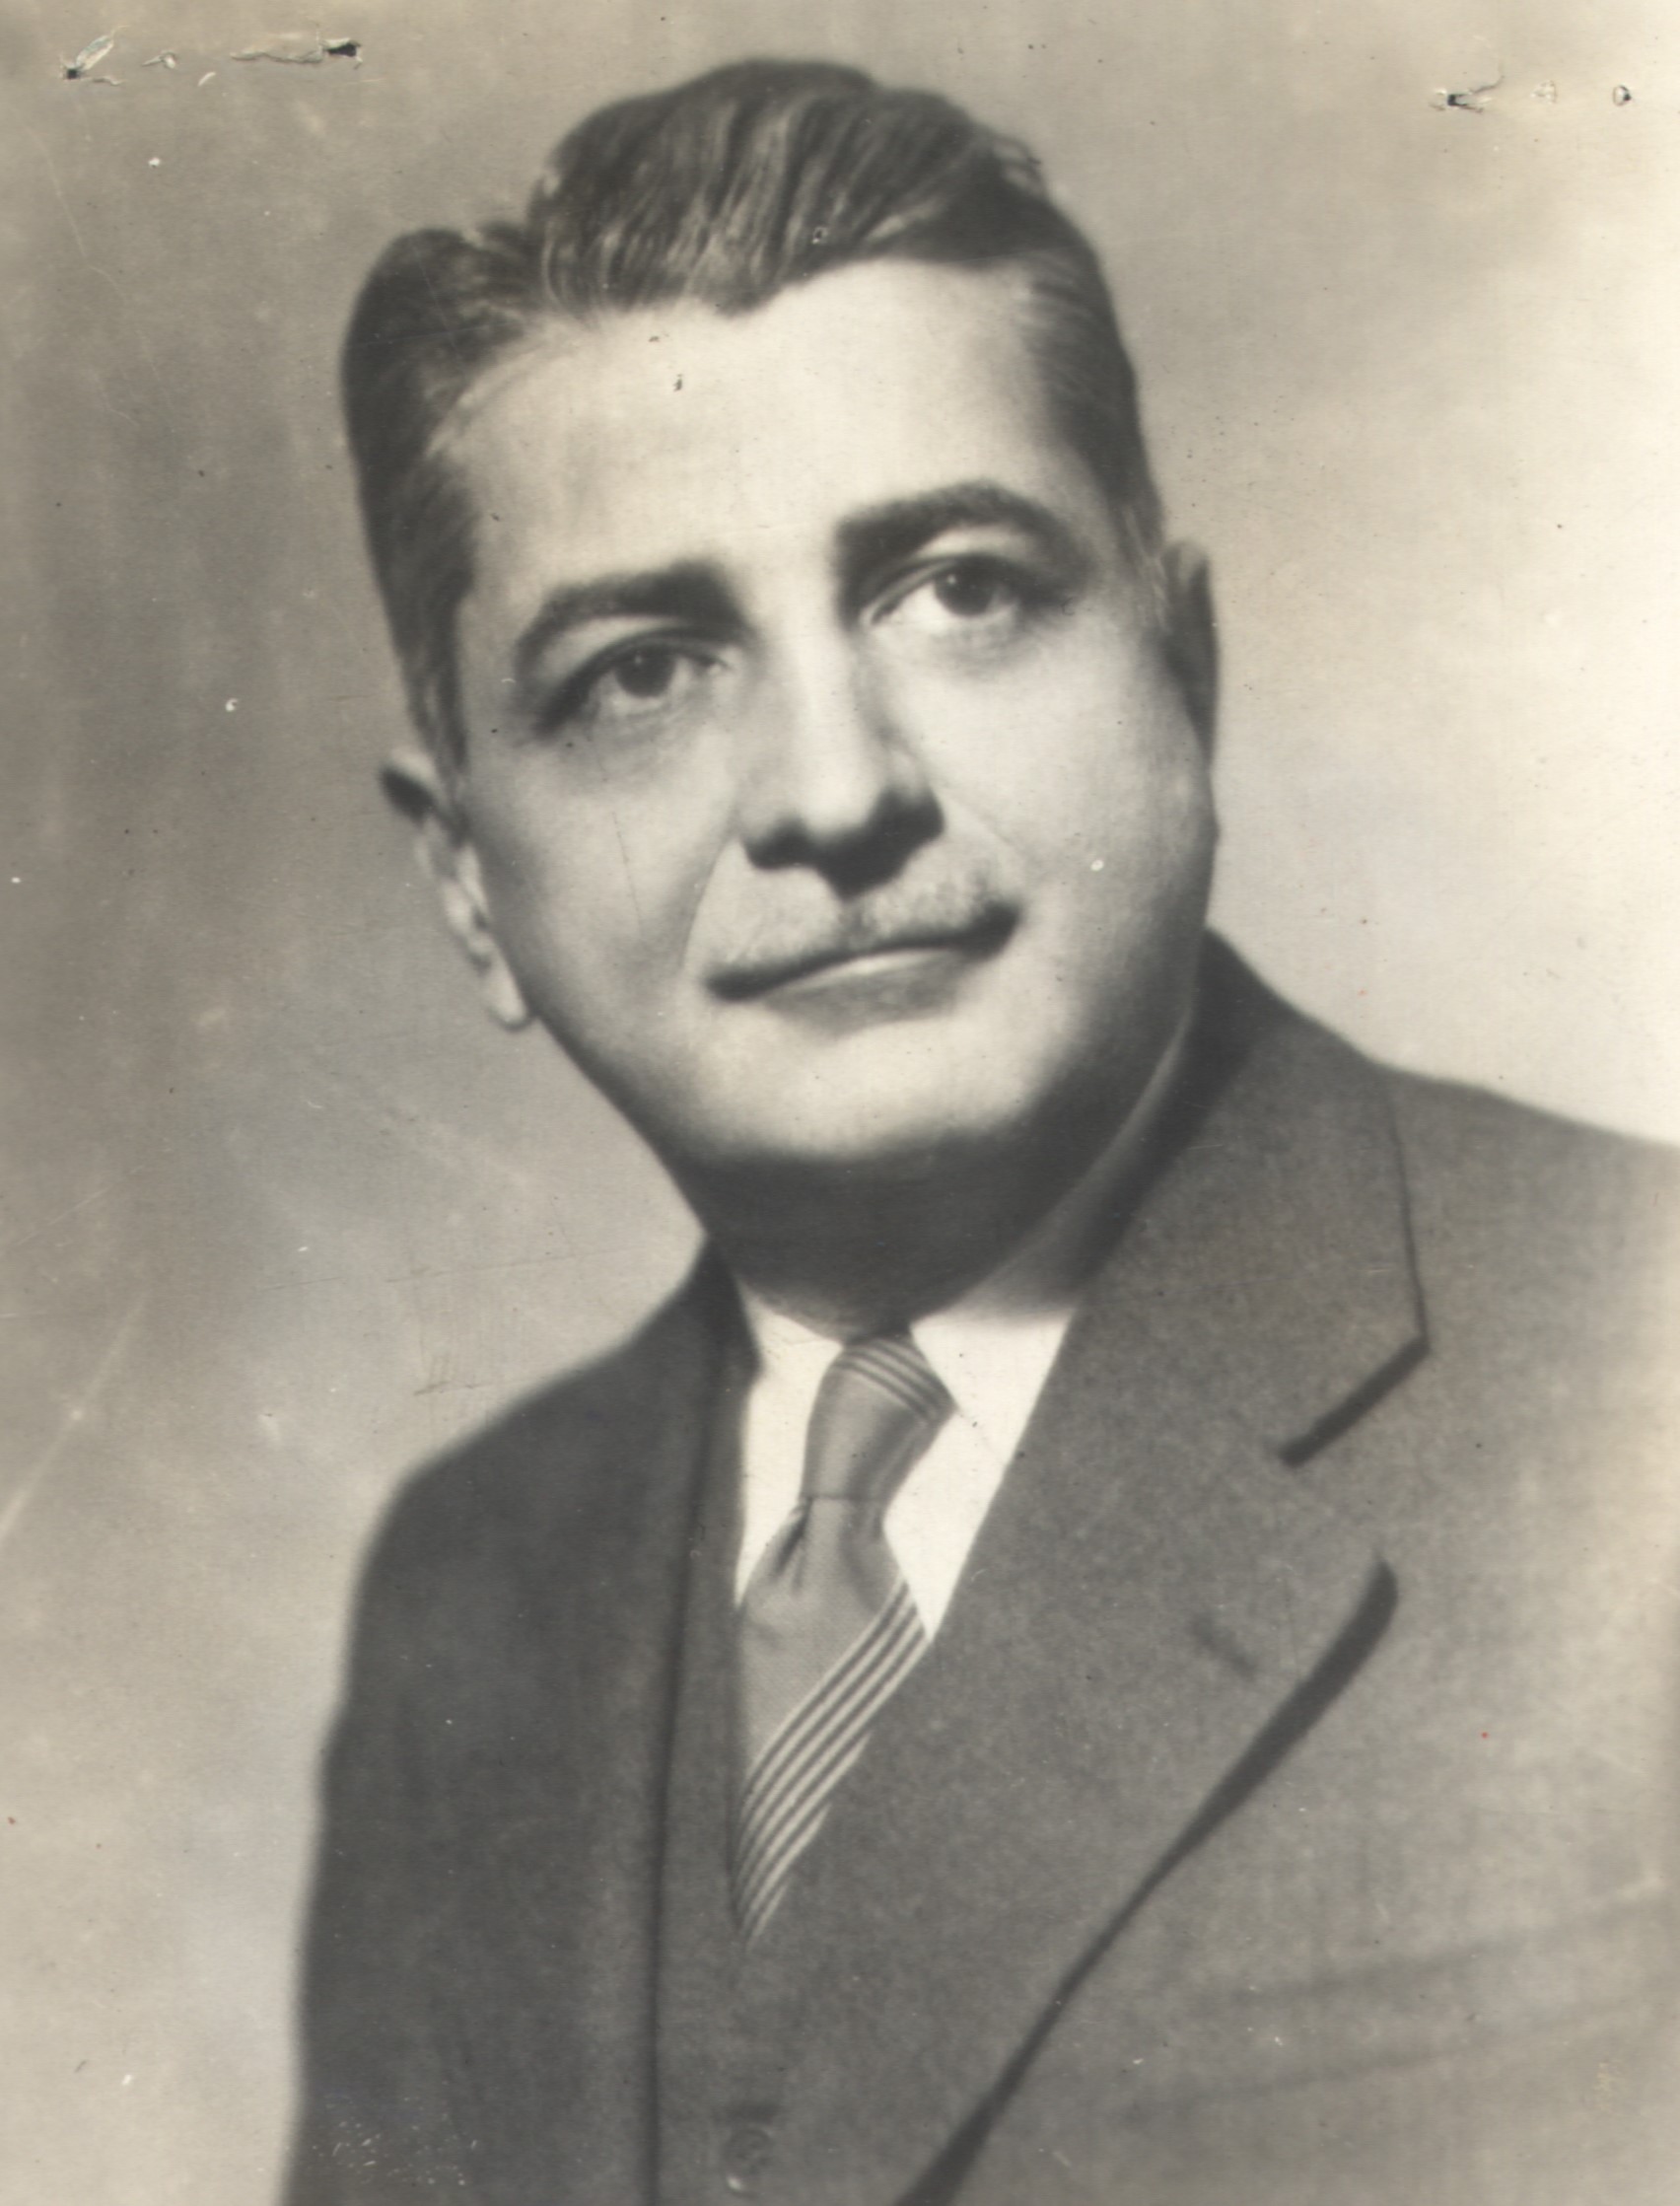 Retrato de Gilberto Freyre em preto e branco. O sociólogo está de terno e gravata, com o cabelo penteado para trás e com bigodes.